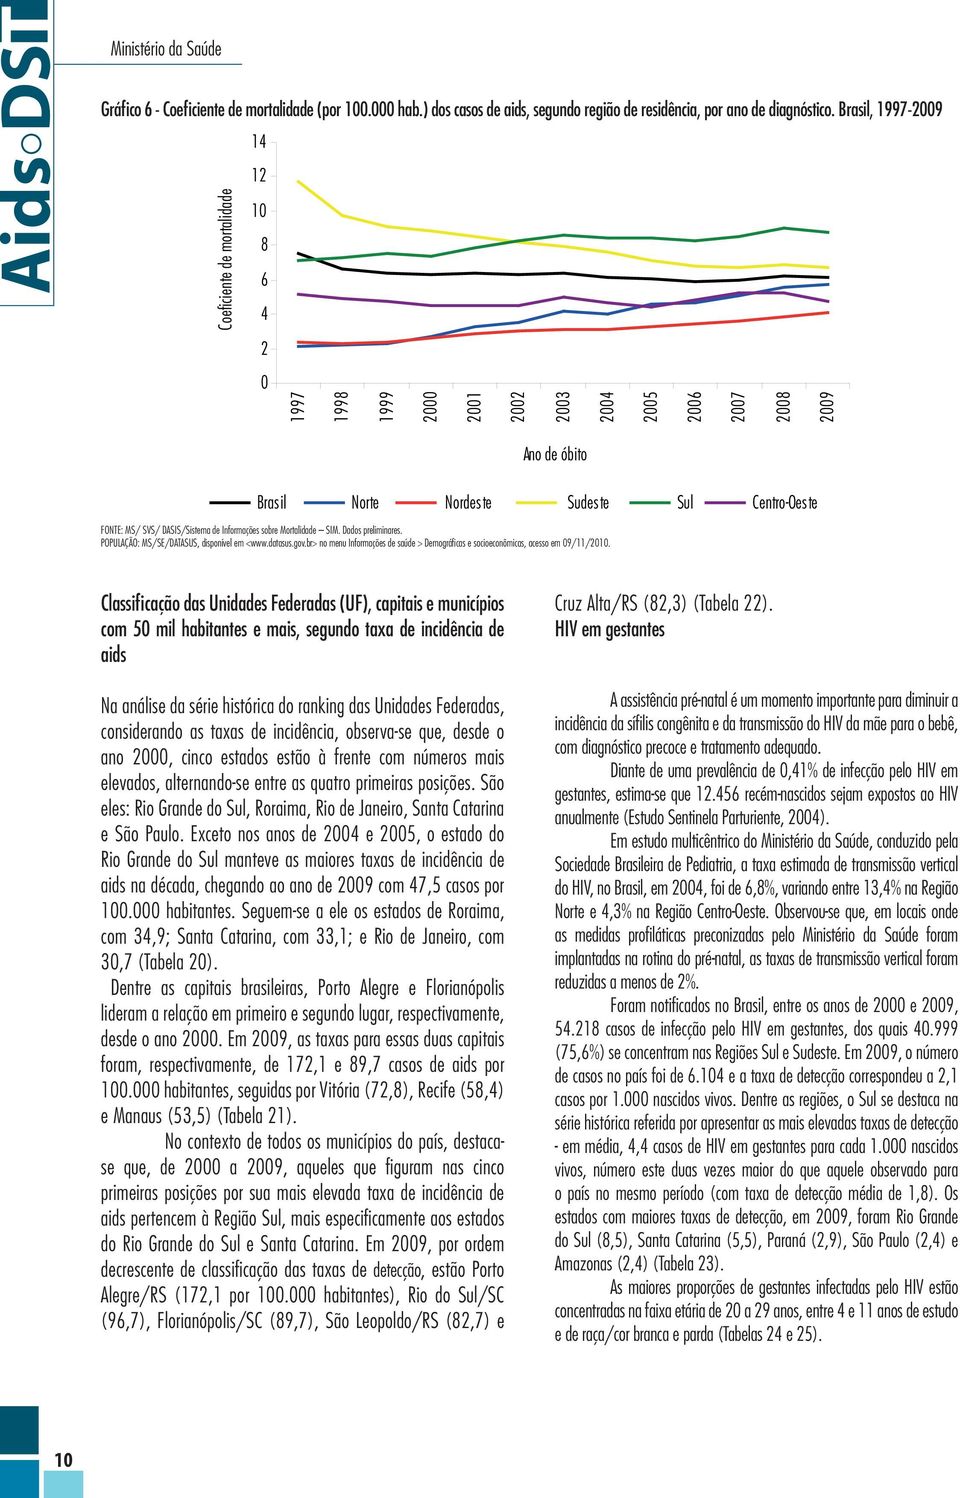 POPULAÇÃO: MS/SE/DATASUS, disponível em <www.datasus.gov.br> no menu Informações de saúde > Demográficas e socioeconômicas, acesso em 09/11/2010.